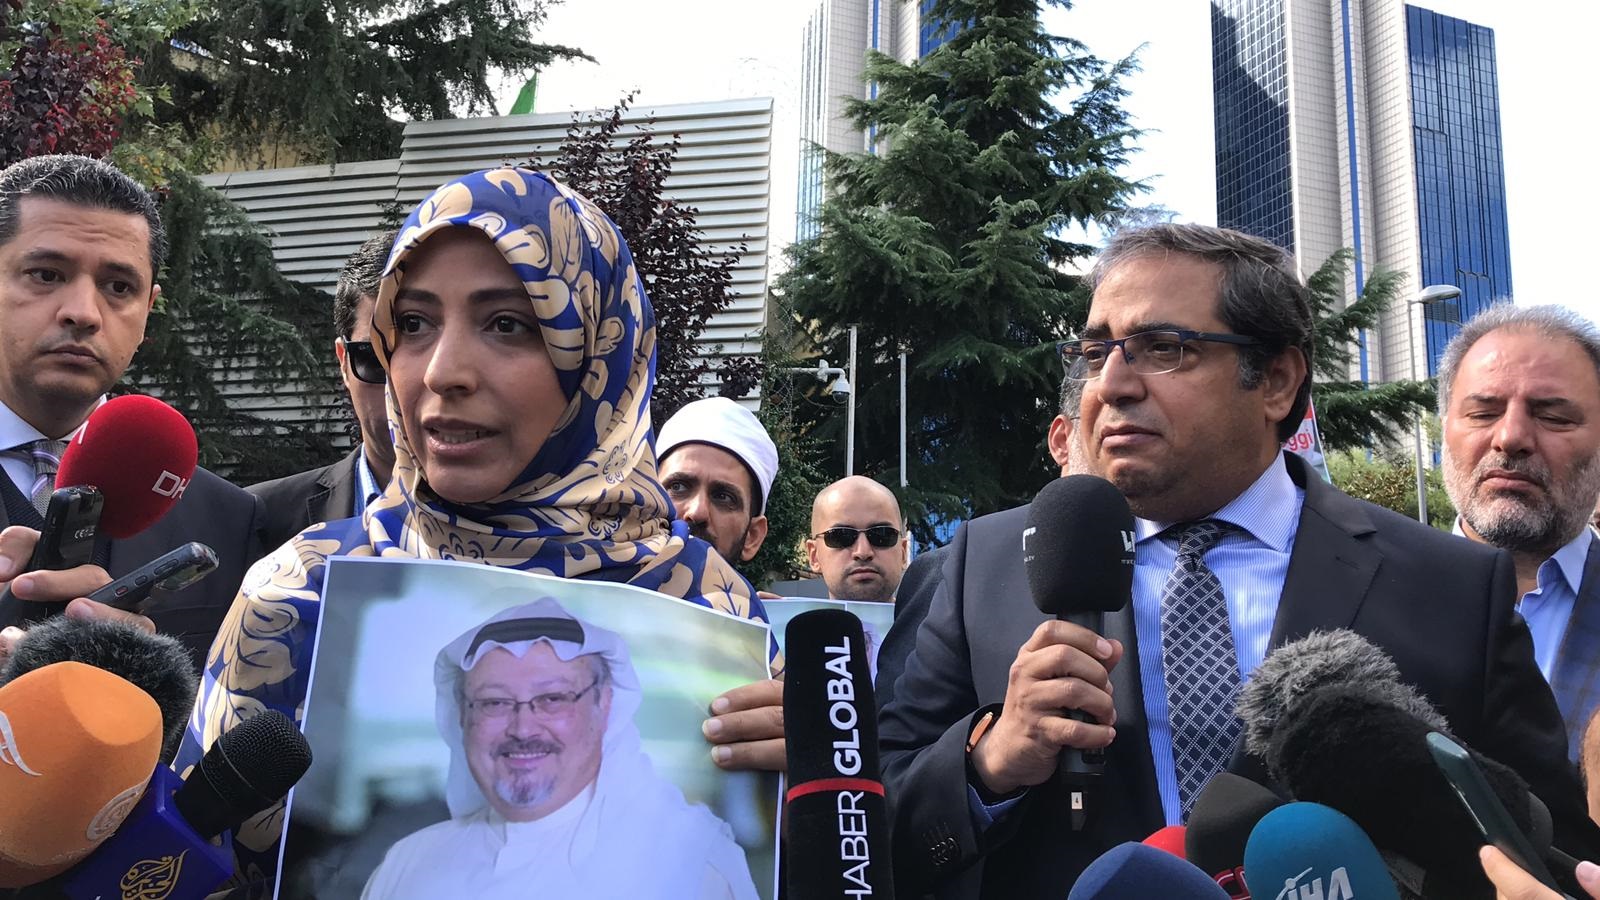 إعلاميون يحتجون أمام القنصلية السعودية بإسطنبول بشأن خاشقجي